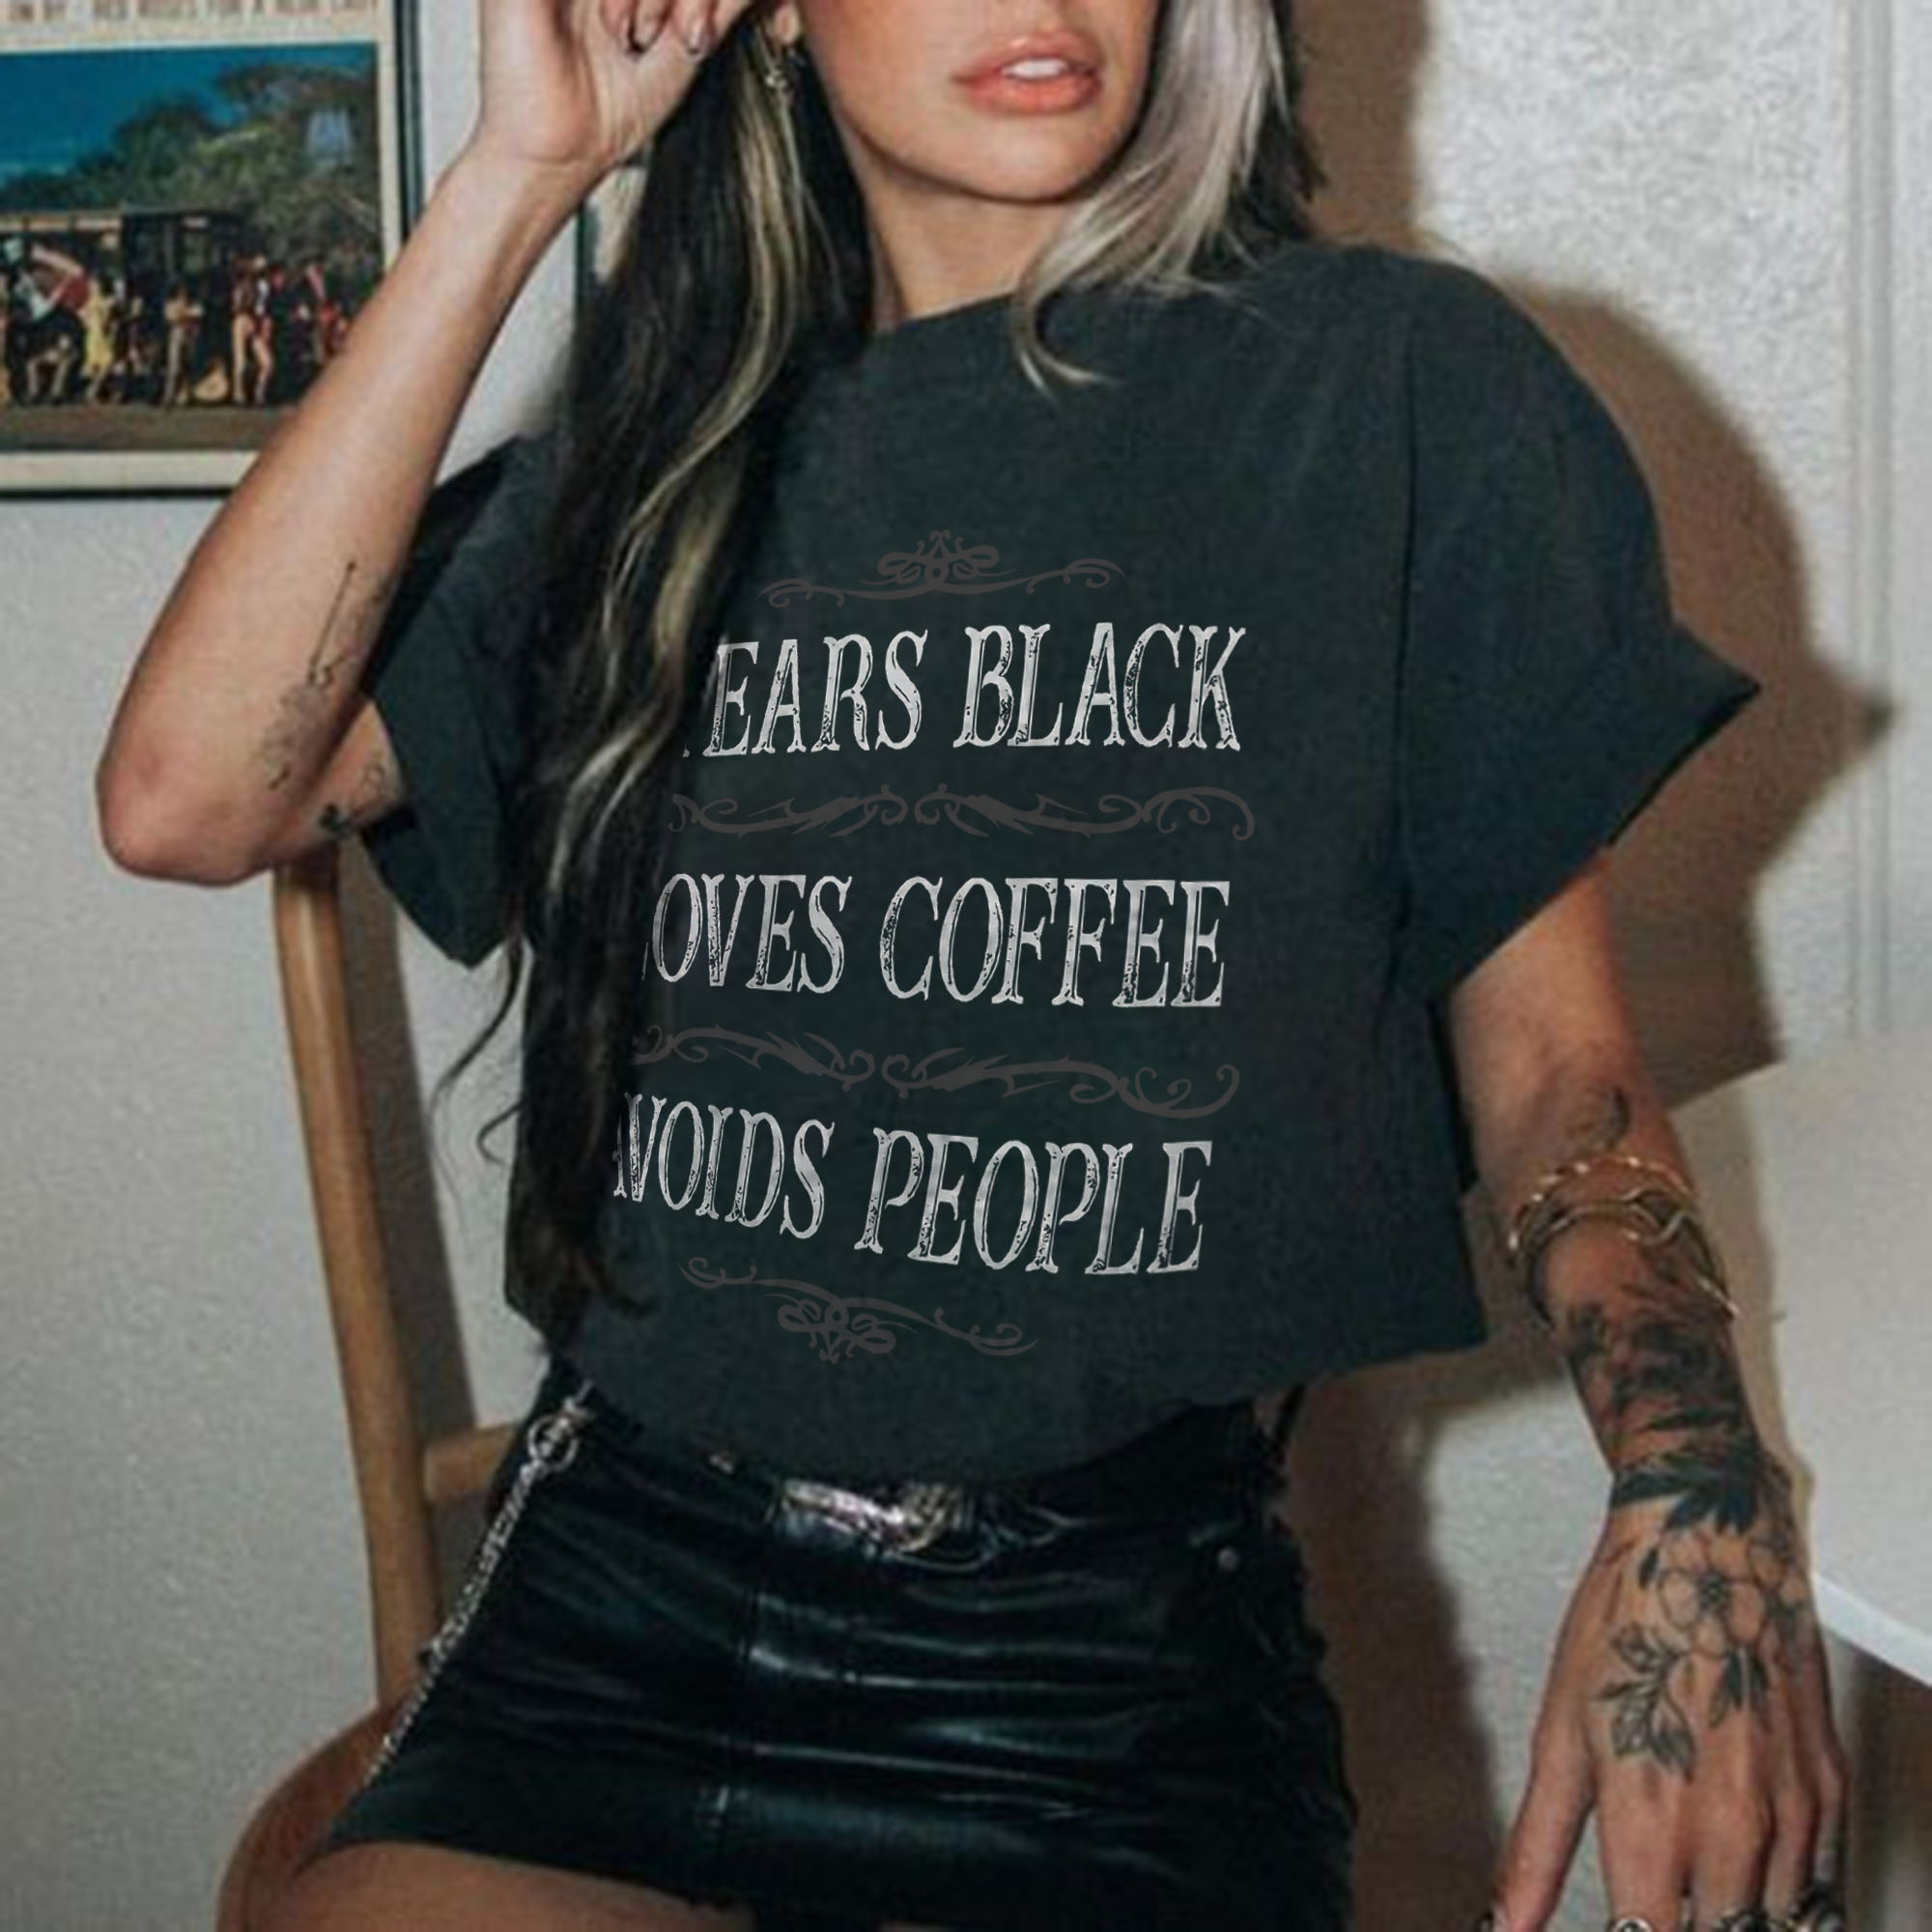 Wears Black Loves Coffee Avoids People T-shirt - Geckodars